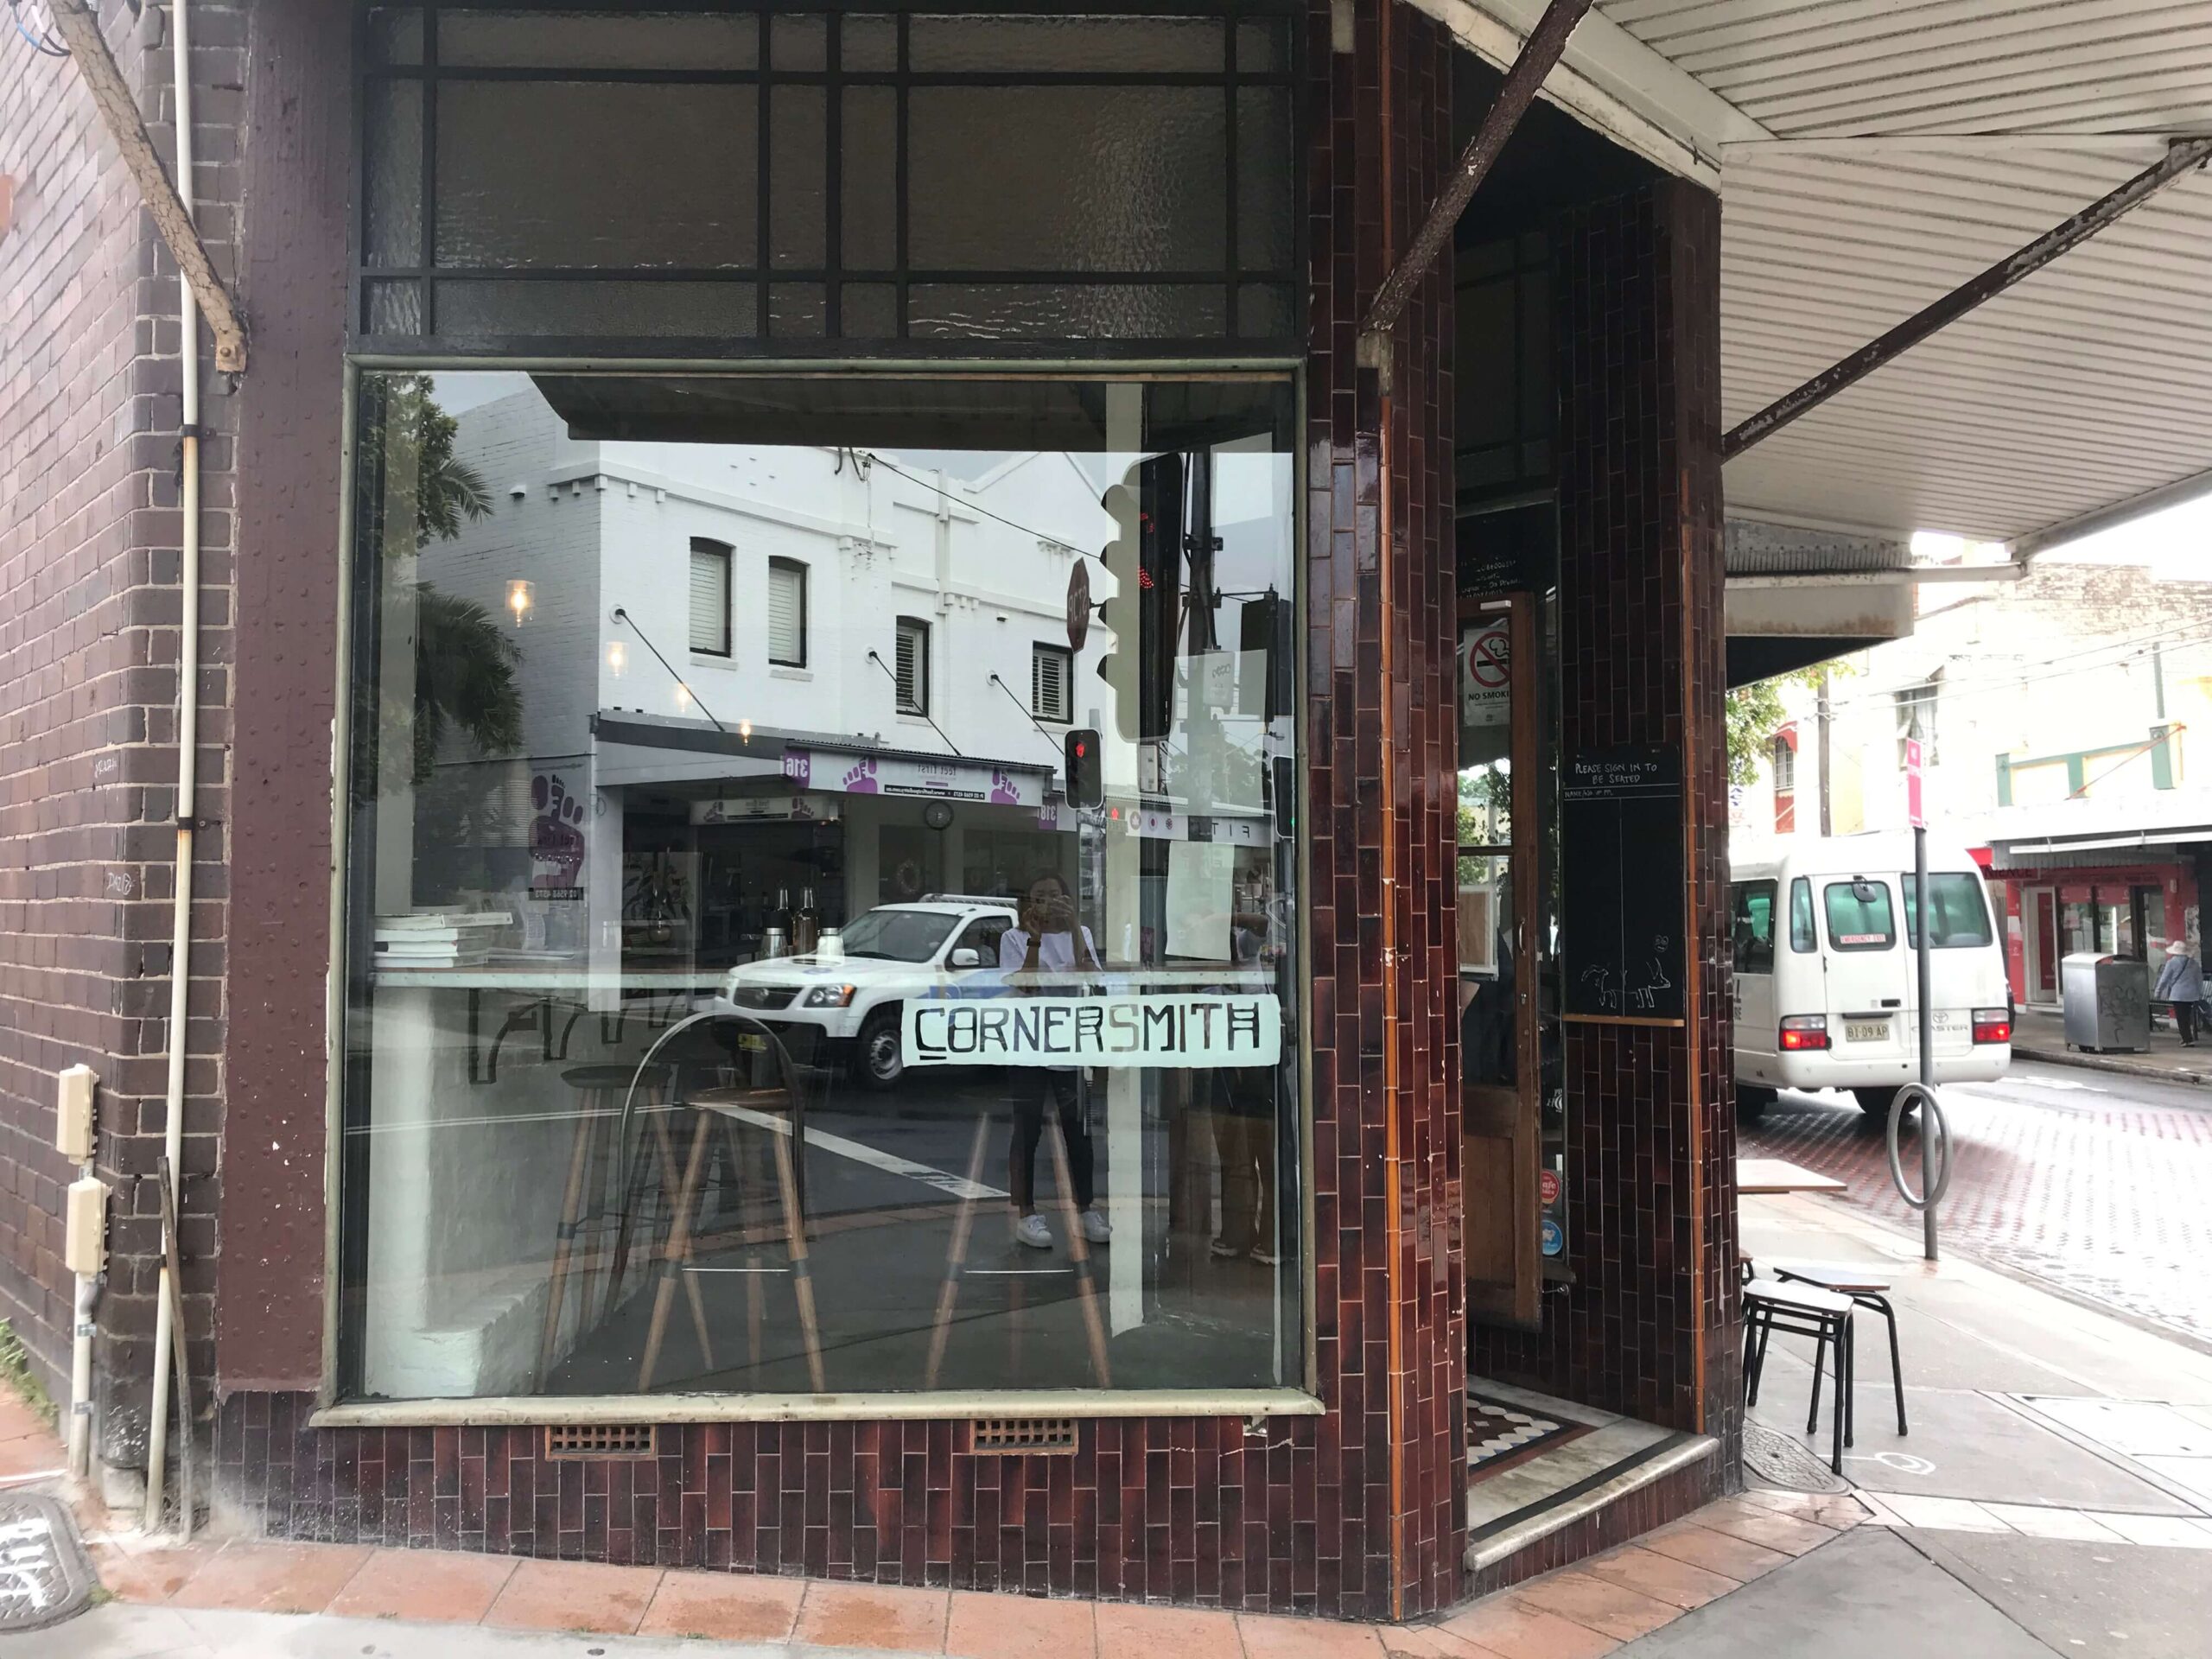 シドニーのカフェ【Cornersmith】の外観の様子を撮影した写真